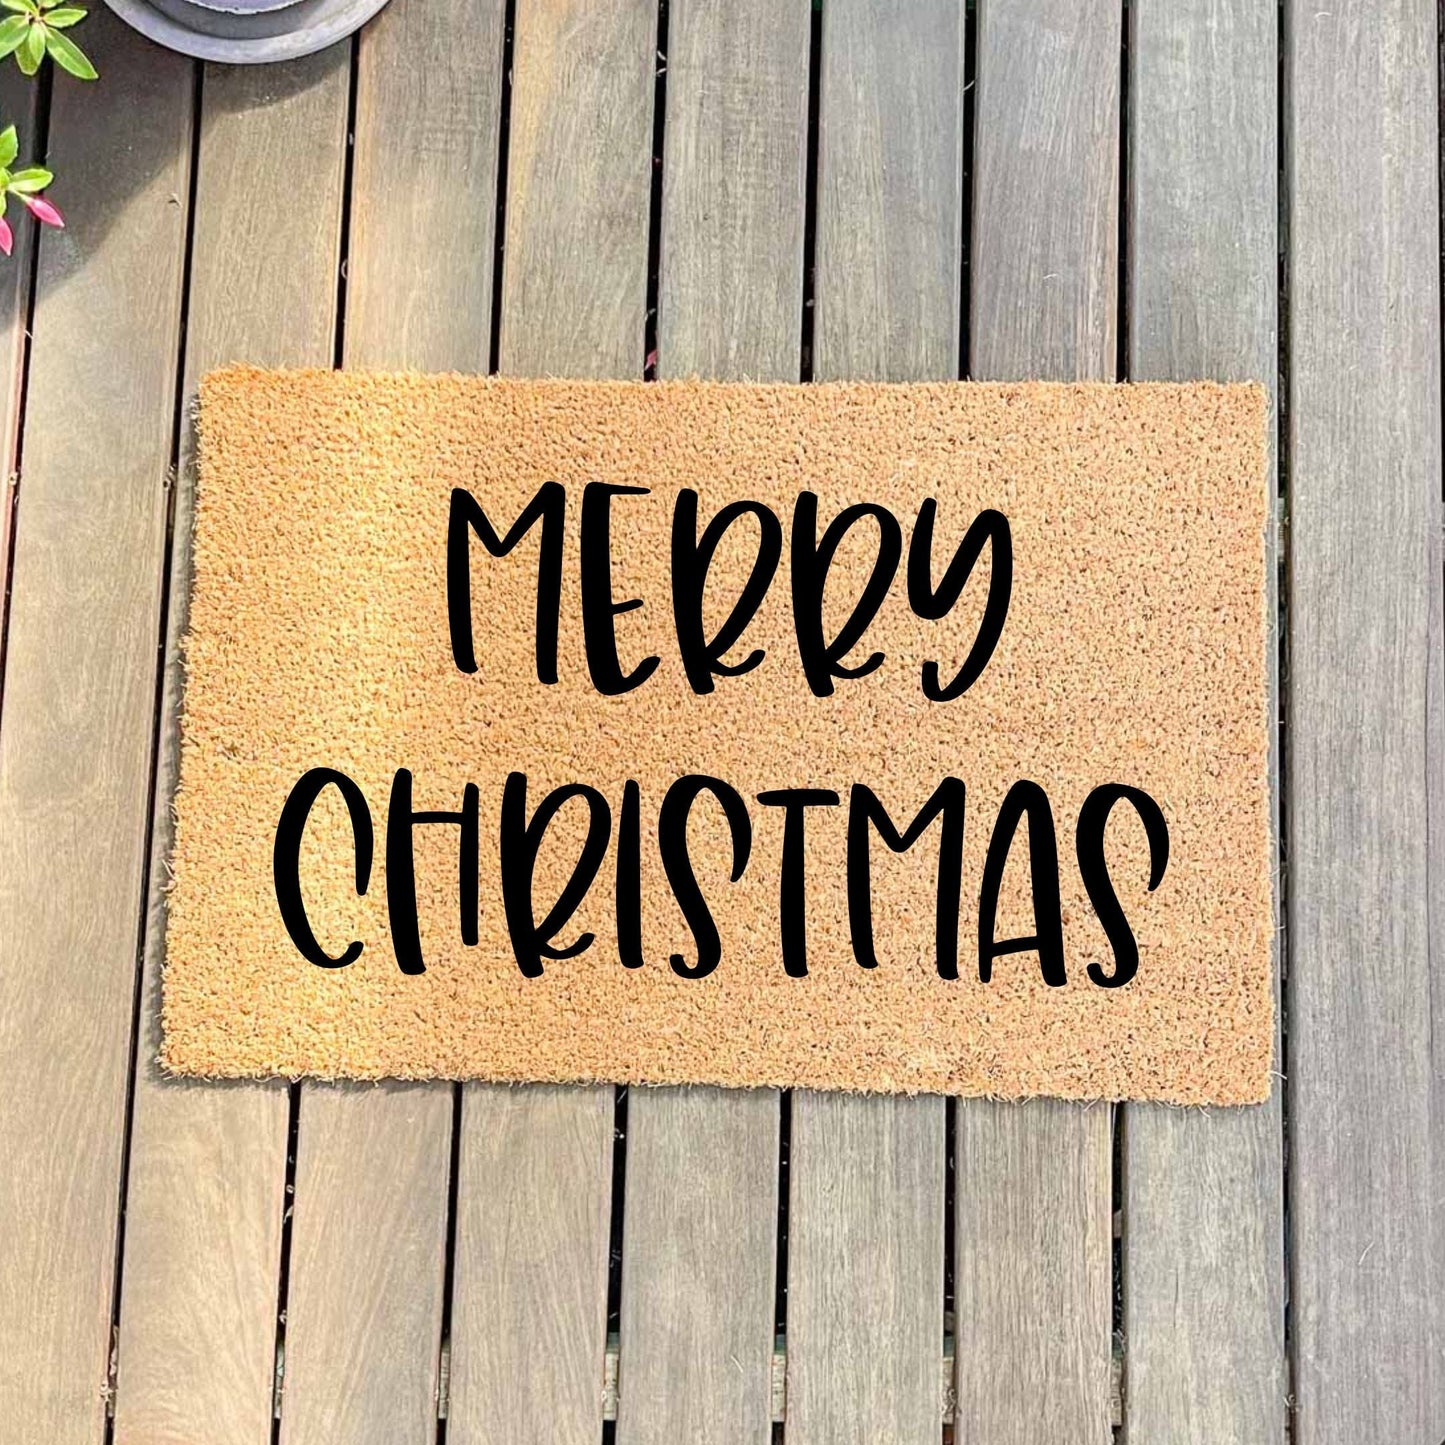 Merry Christmas doormat, Christmas doormat, Seasonal Doormat, Holidays Doormat